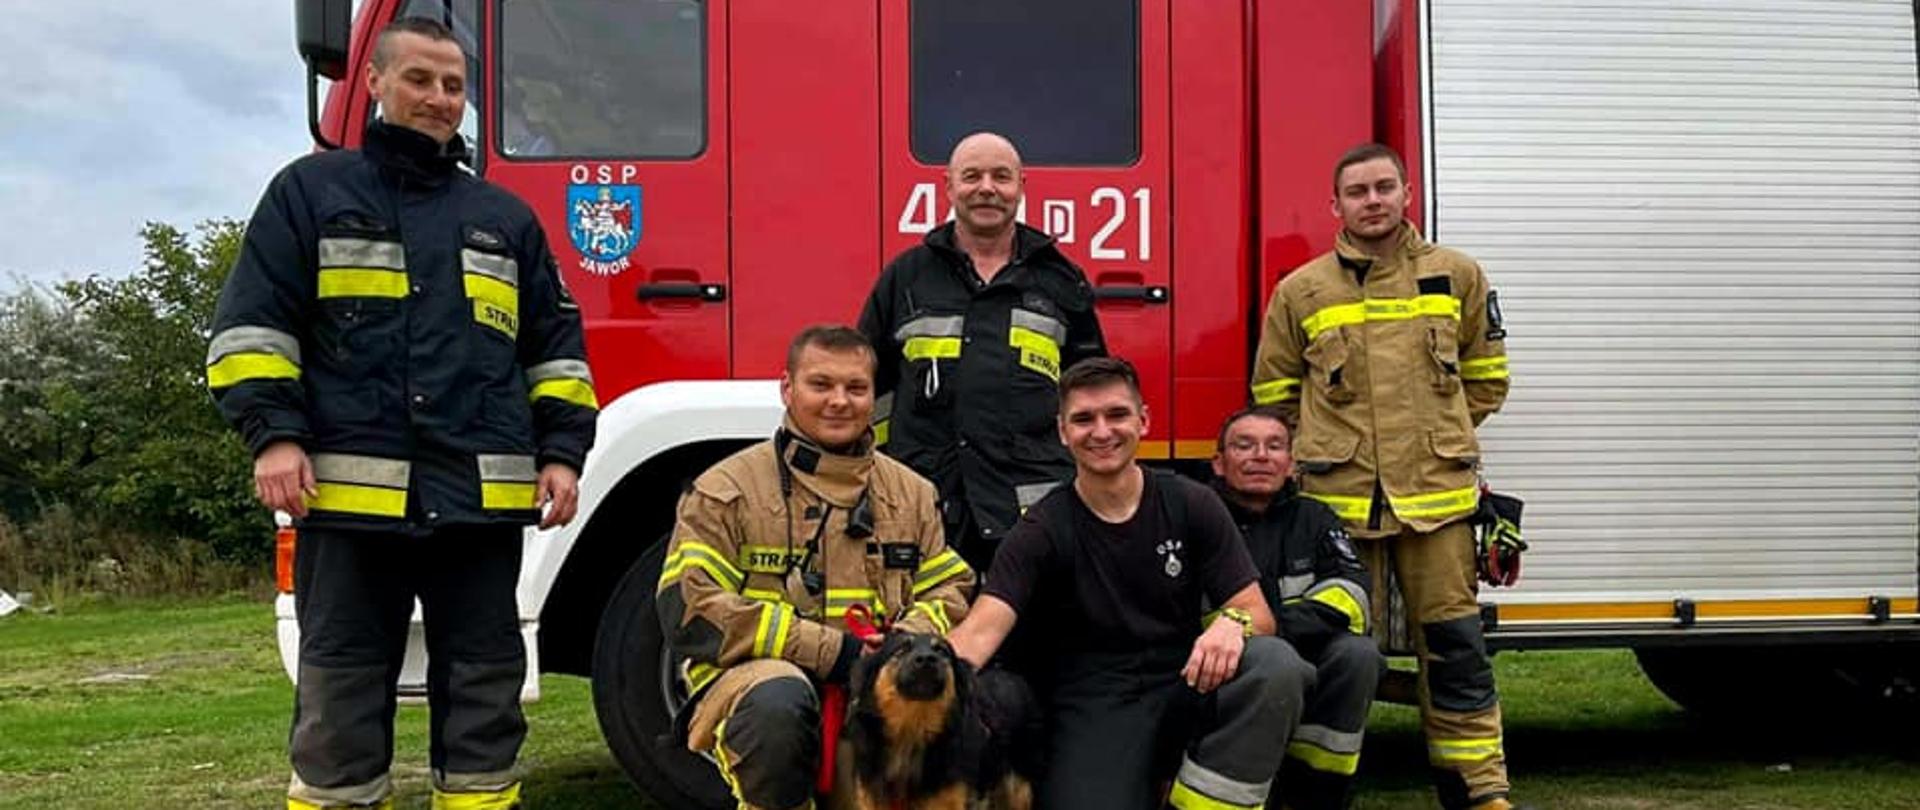 Obraz przedstawia strażaków z uratowanym psem na tle samochodu pożarniczego.